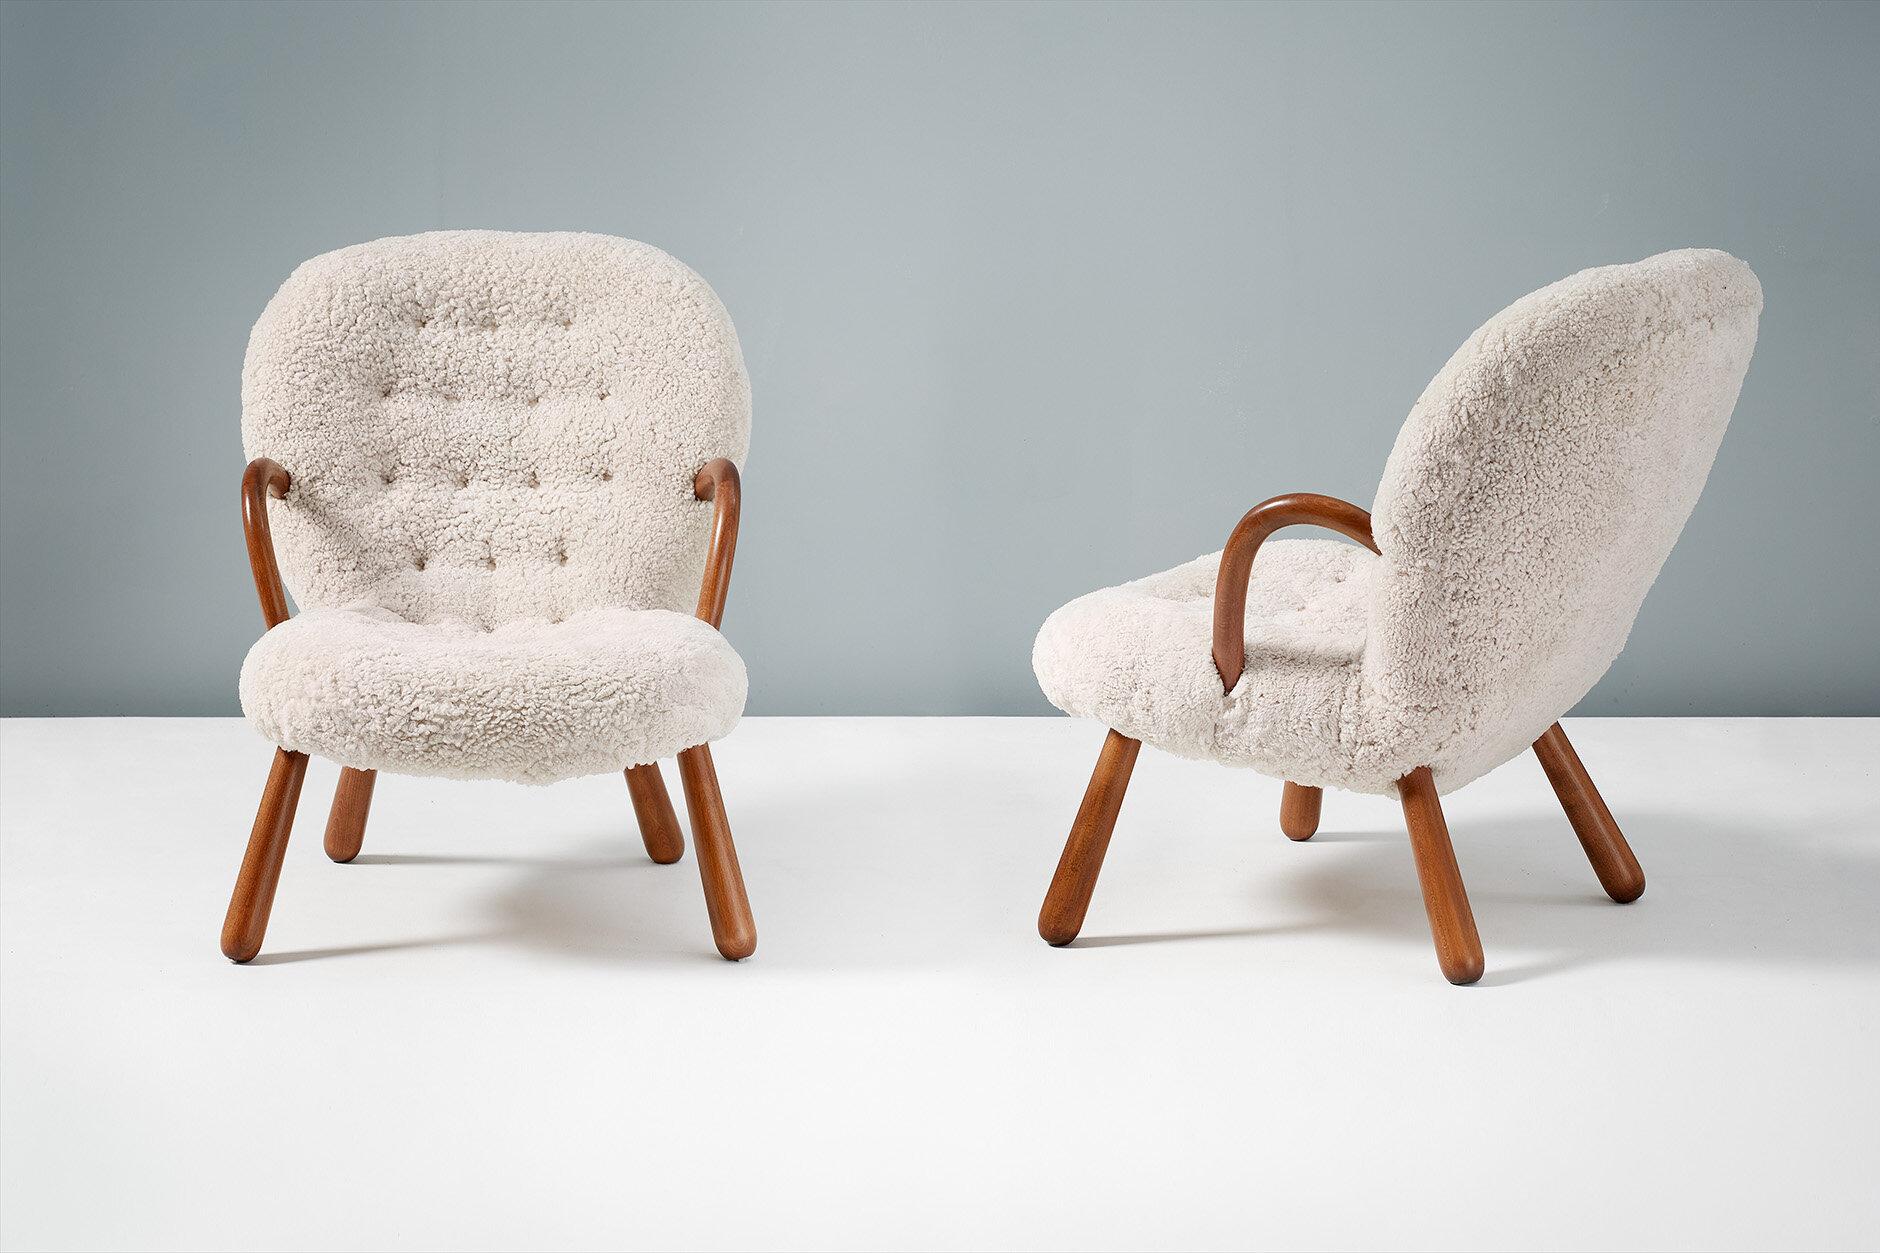 Arnold Madsen

Der Muschelsessel, 1944

Der einzigartige Clam Stuhl wurde 1944 in Kopenhagen entworfen und ist zu einer Ikone des dänischen modernen Designs geworden. Viele Jahre lang wurde dieser geheimnisvolle Stuhl dem dänischen Architekten